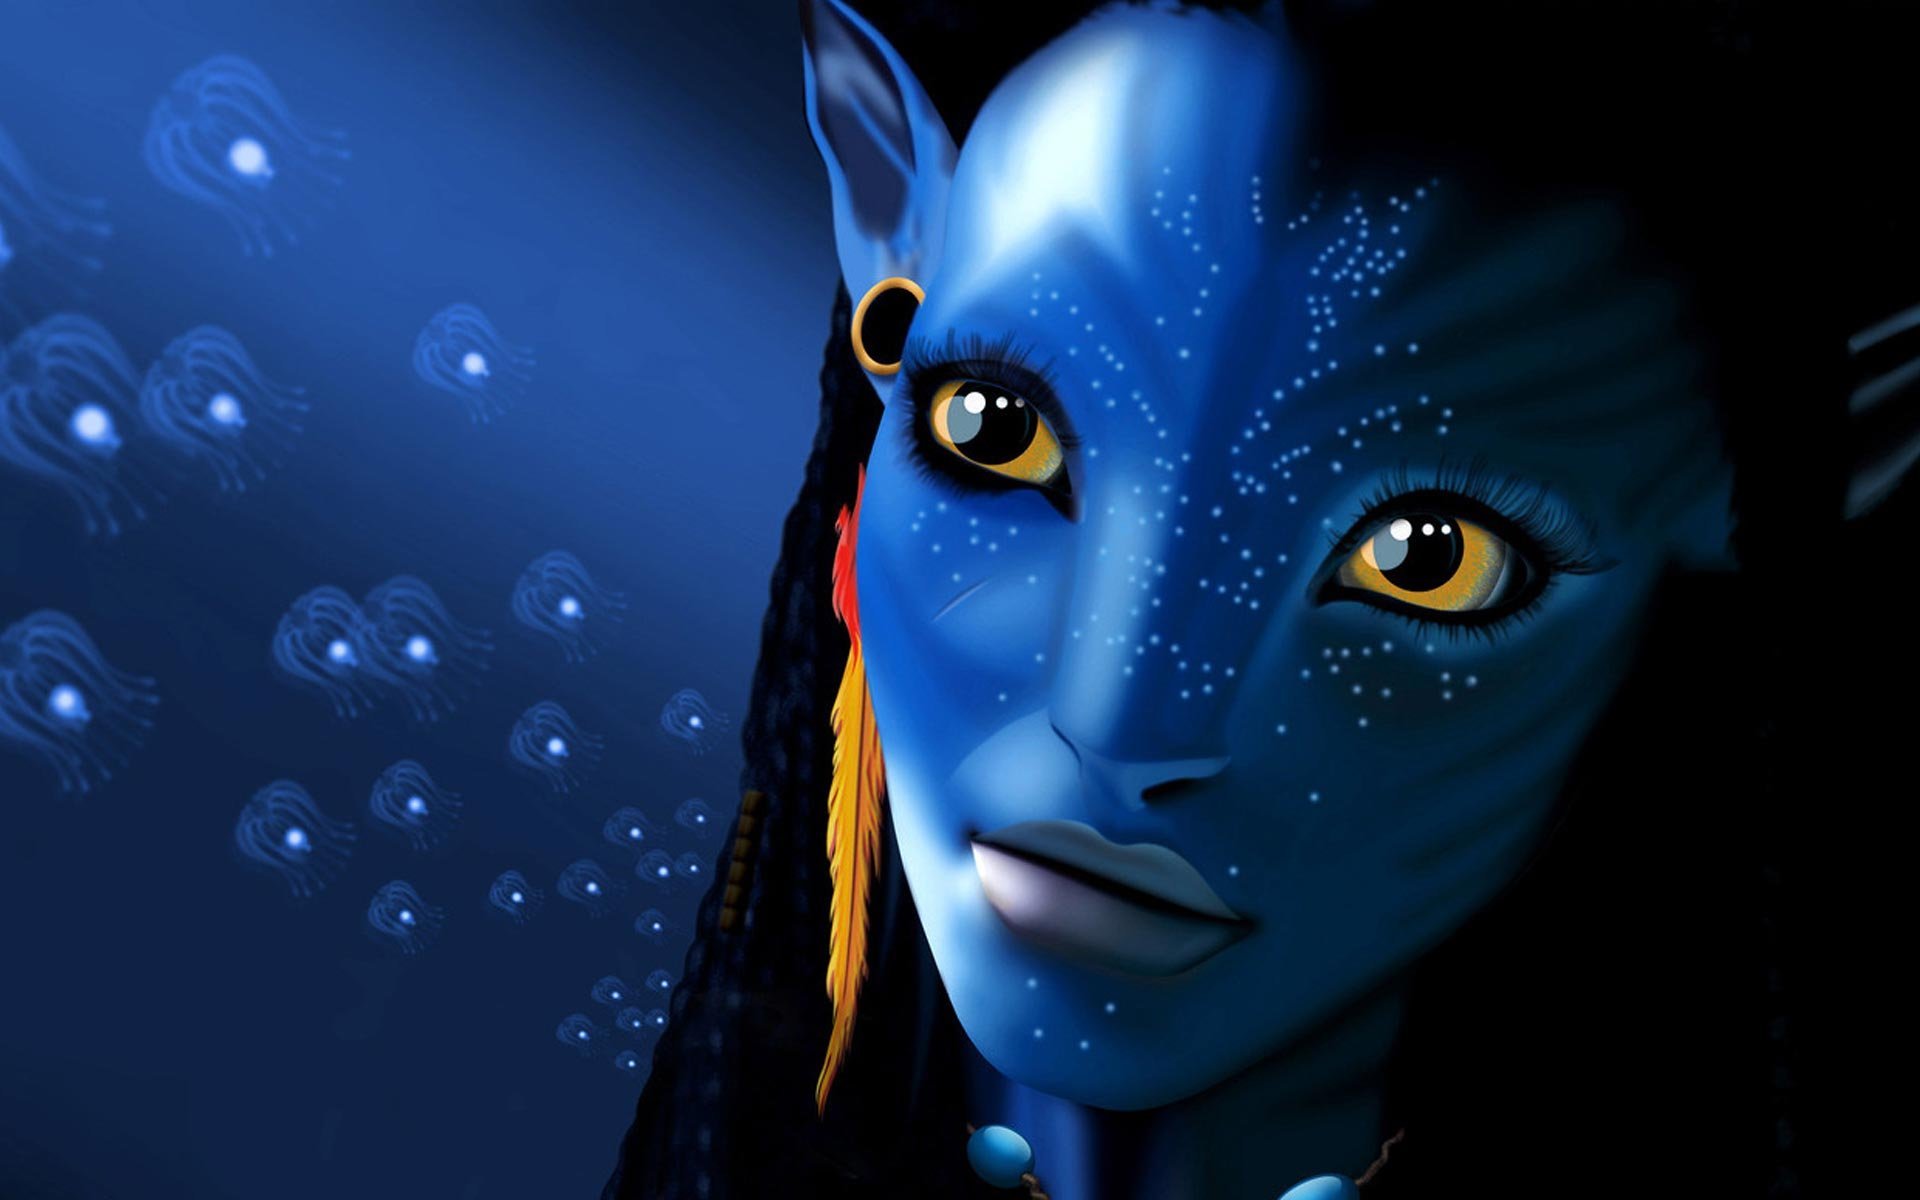 Популярные заставки и фоны Аватар (Avatar) на компьютер